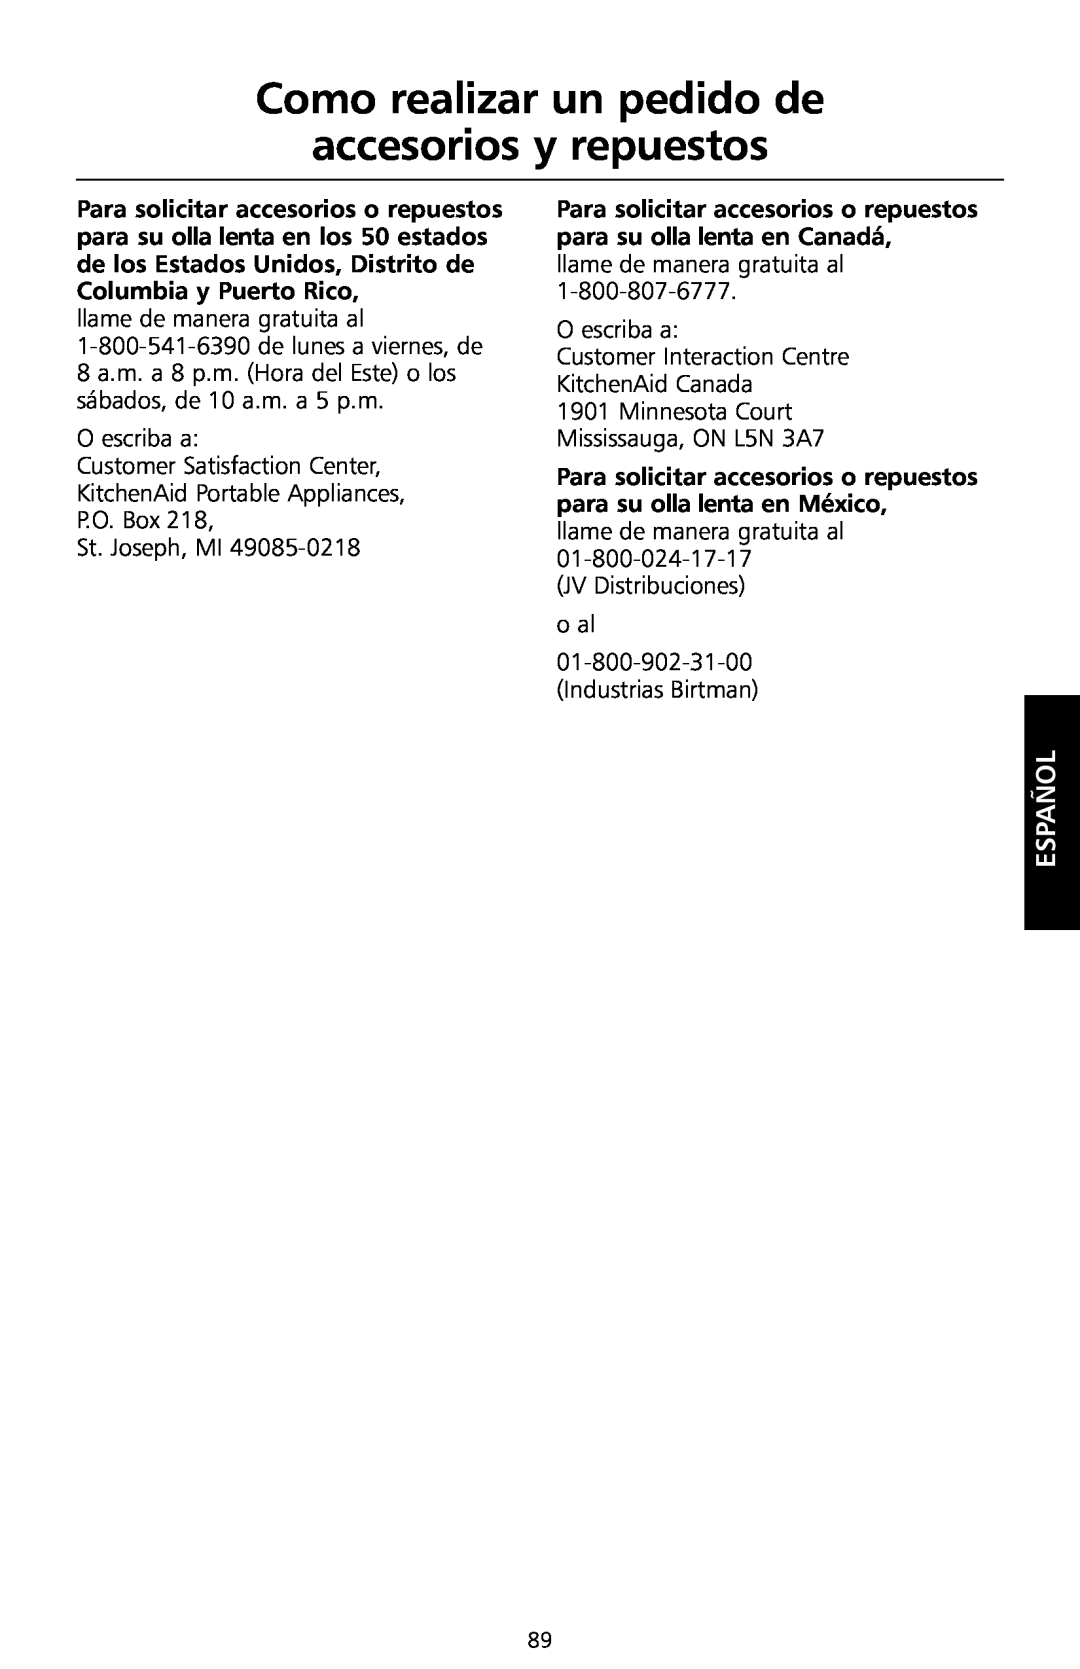 KitchenAid KSC700 manual Como realizar un pedido de accesorios y repuestos, Español 